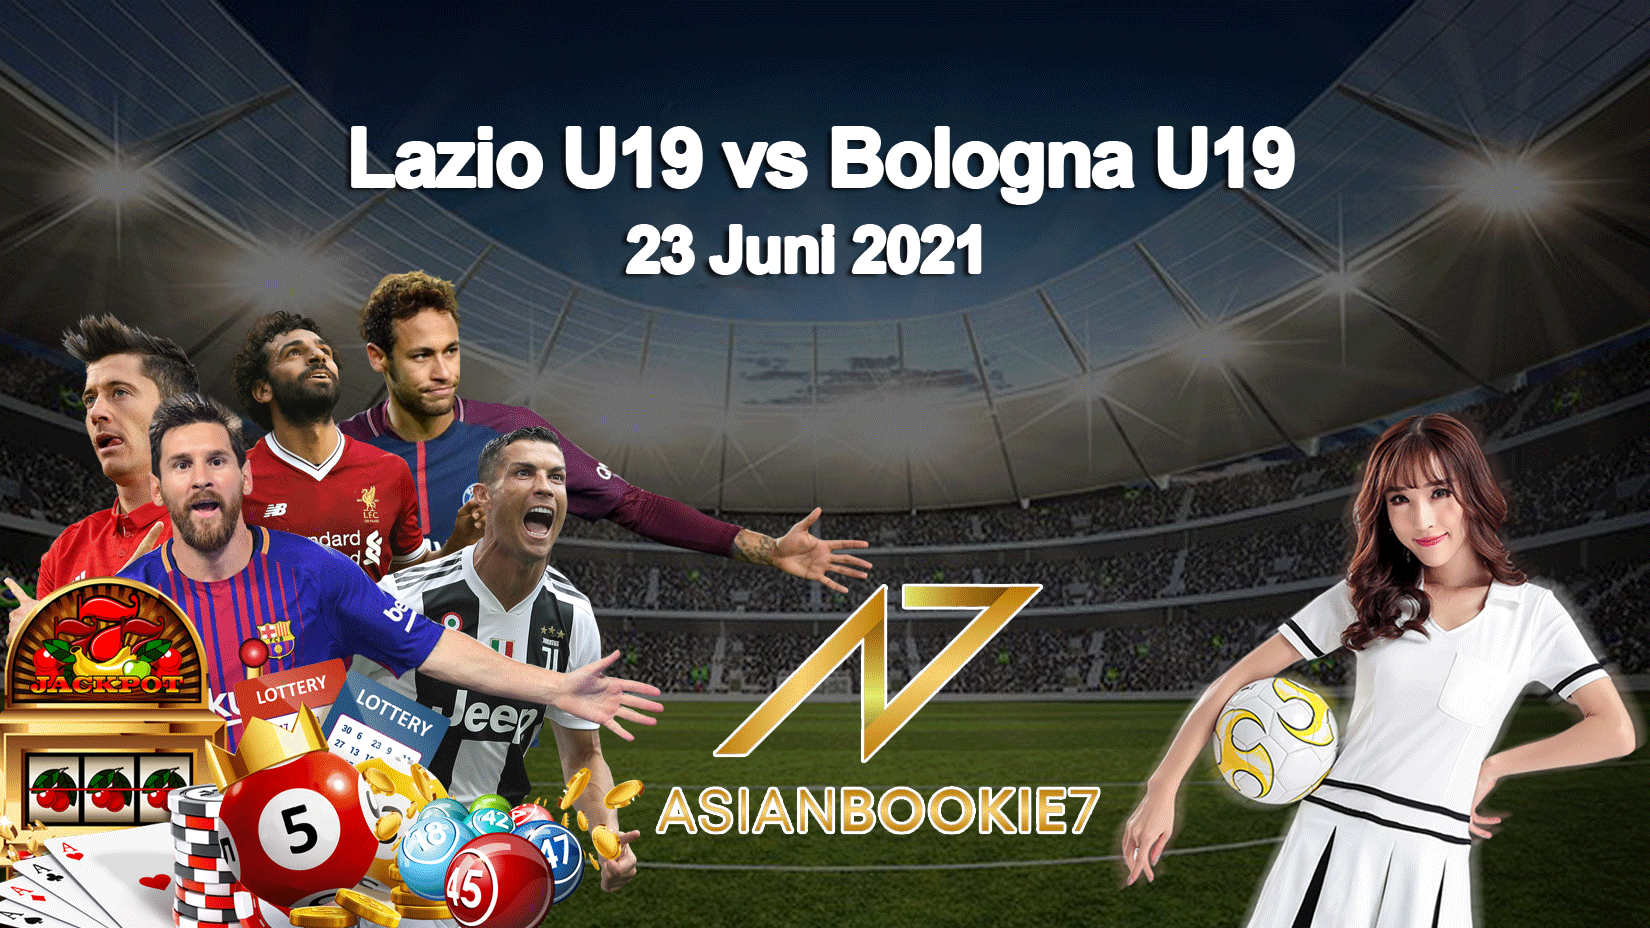 Prediksi Lazio U19 vs Bologna U19 23 Juni 2021